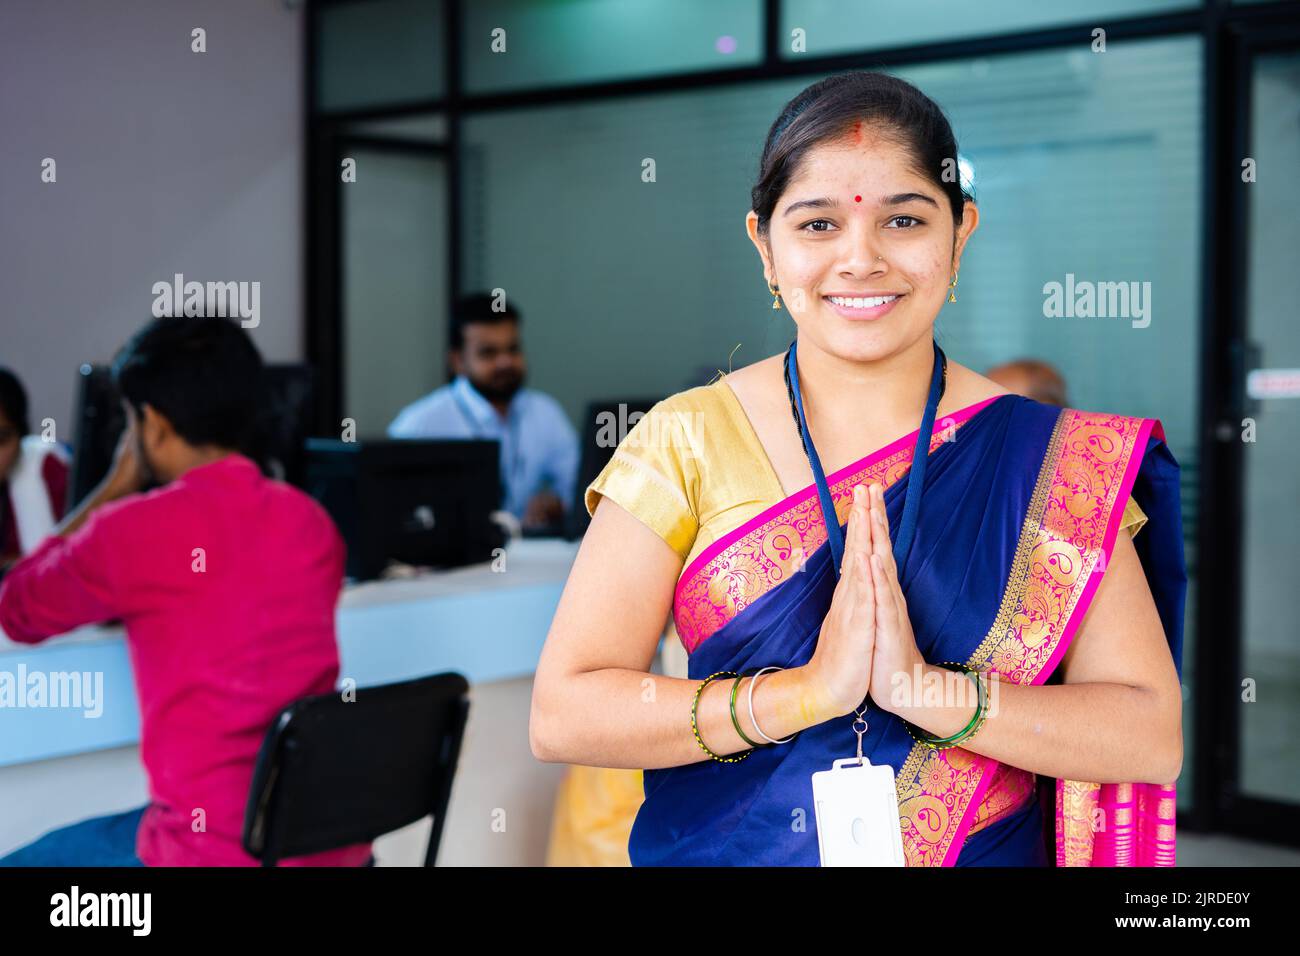 Portraitaufnahme der Begrüßung des glücklichen, lächelnden Bankmitarbeiters durch Namaste, während er vor den Kunden mit der Kamera blickt - Konzept der Dankbarkeit, Begrüßung Stockfoto